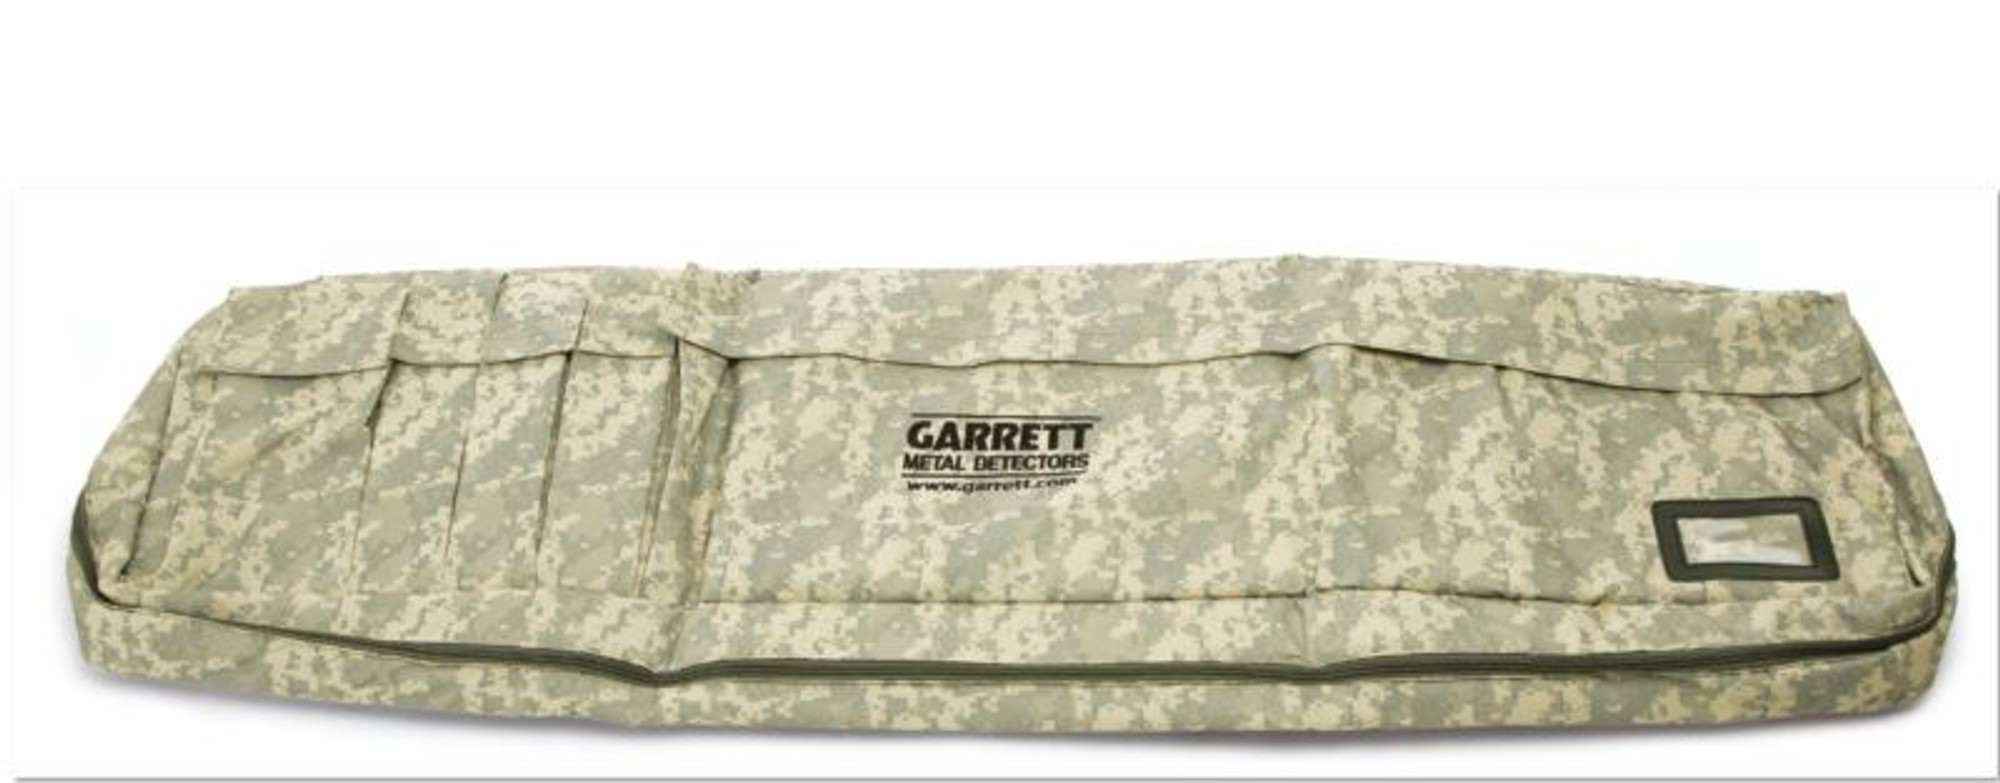 Garrett Universial Metal Detector Bag - Camo